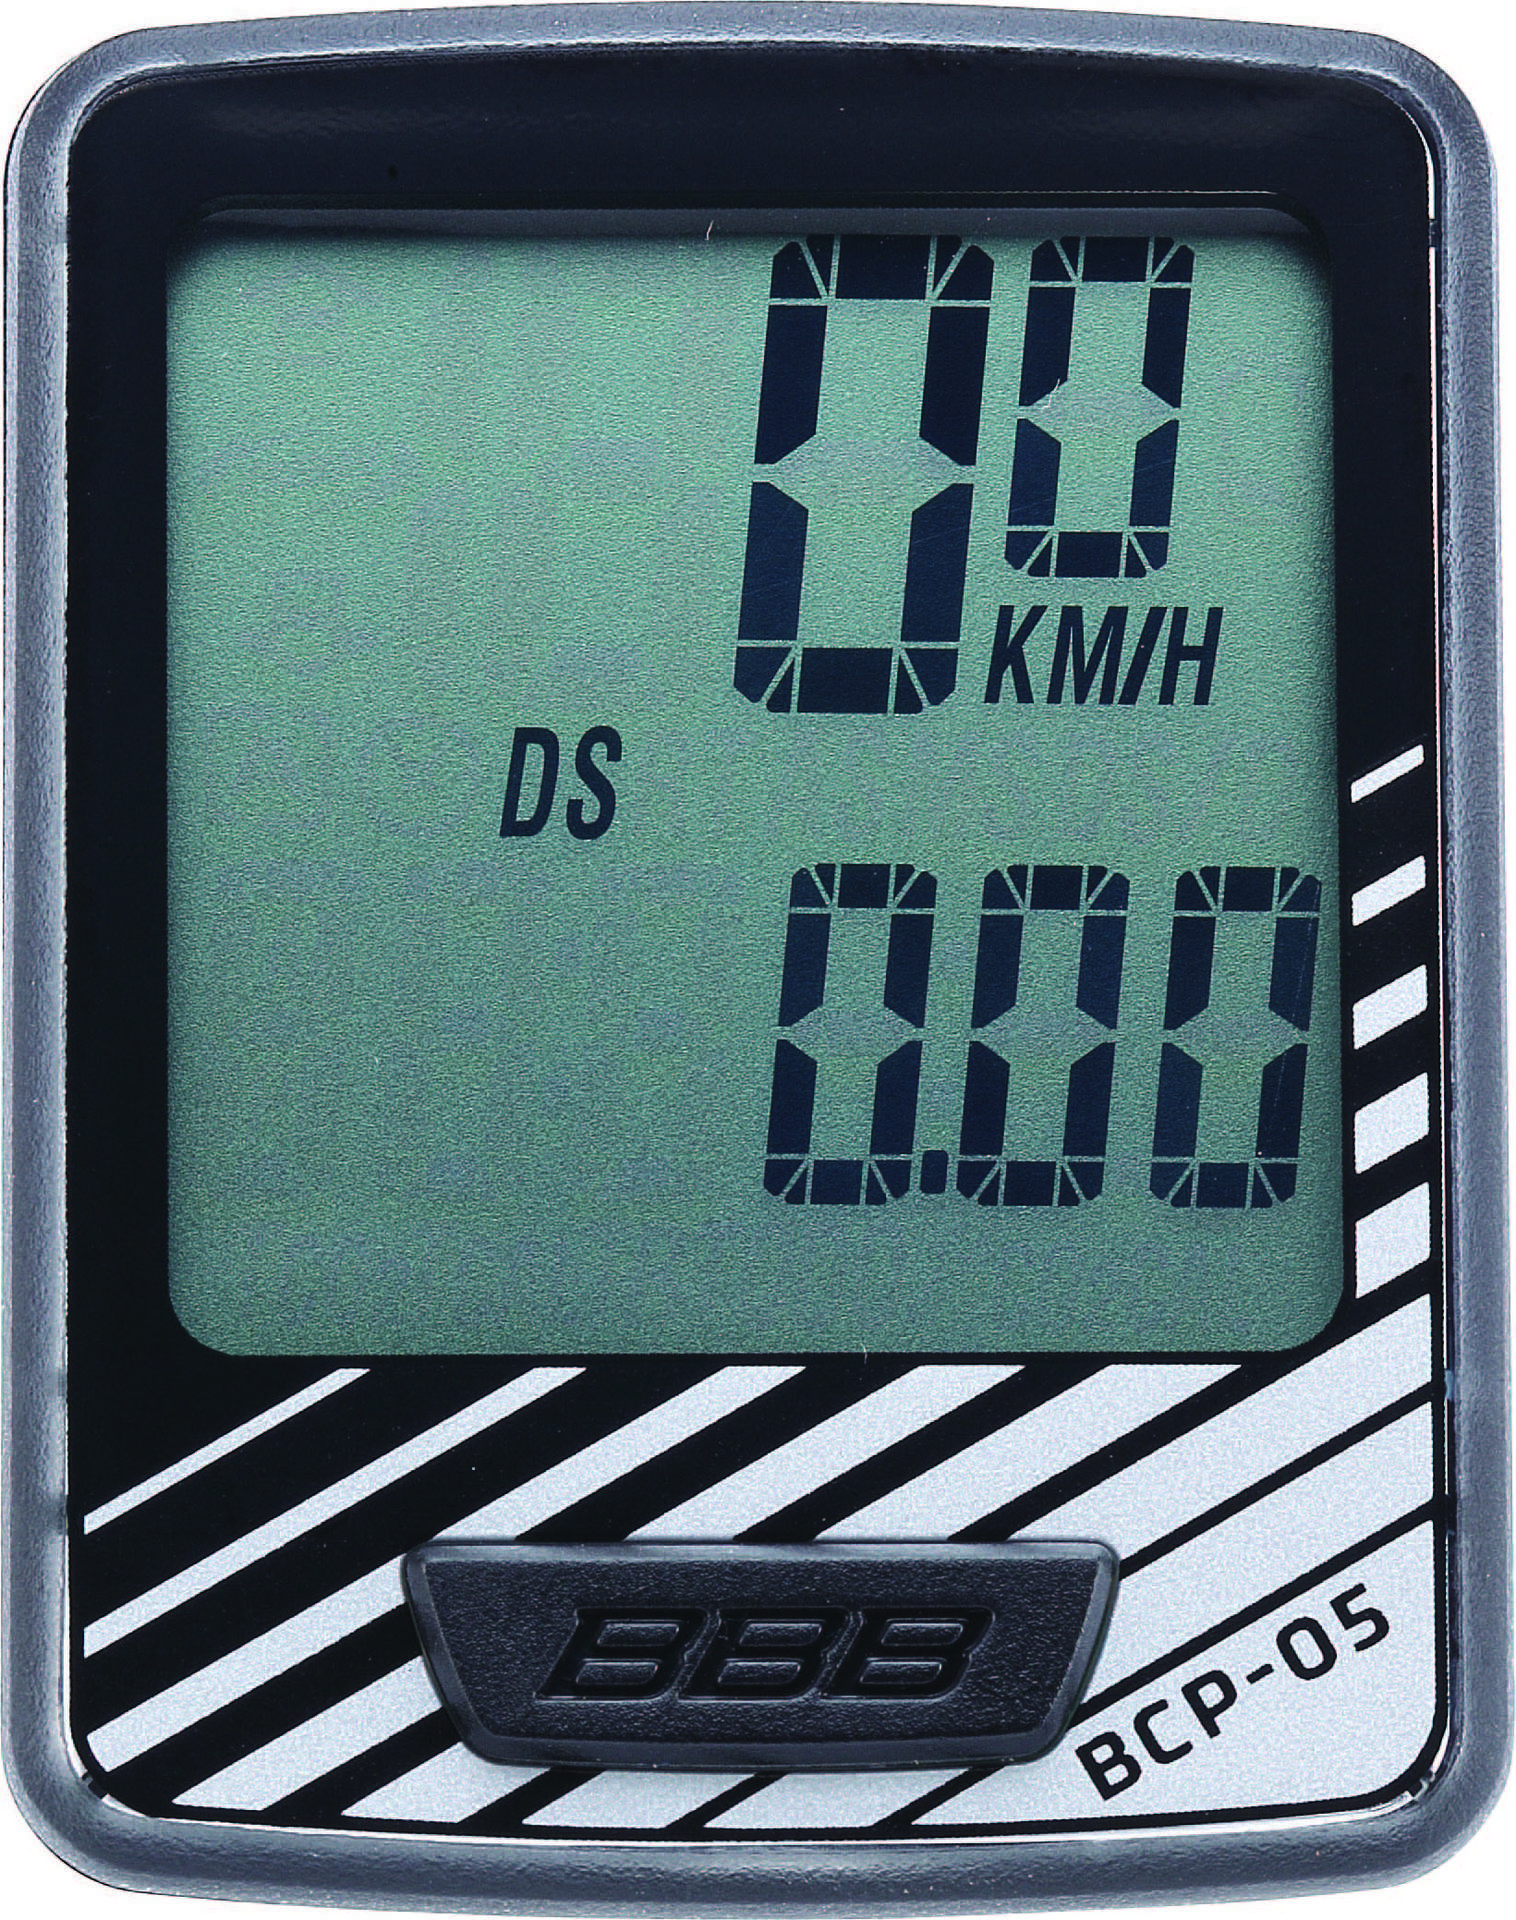 BBB Cycling DashBoard 7-functies BCP-05 Fietscomputer met Draad Zwart/Grijs